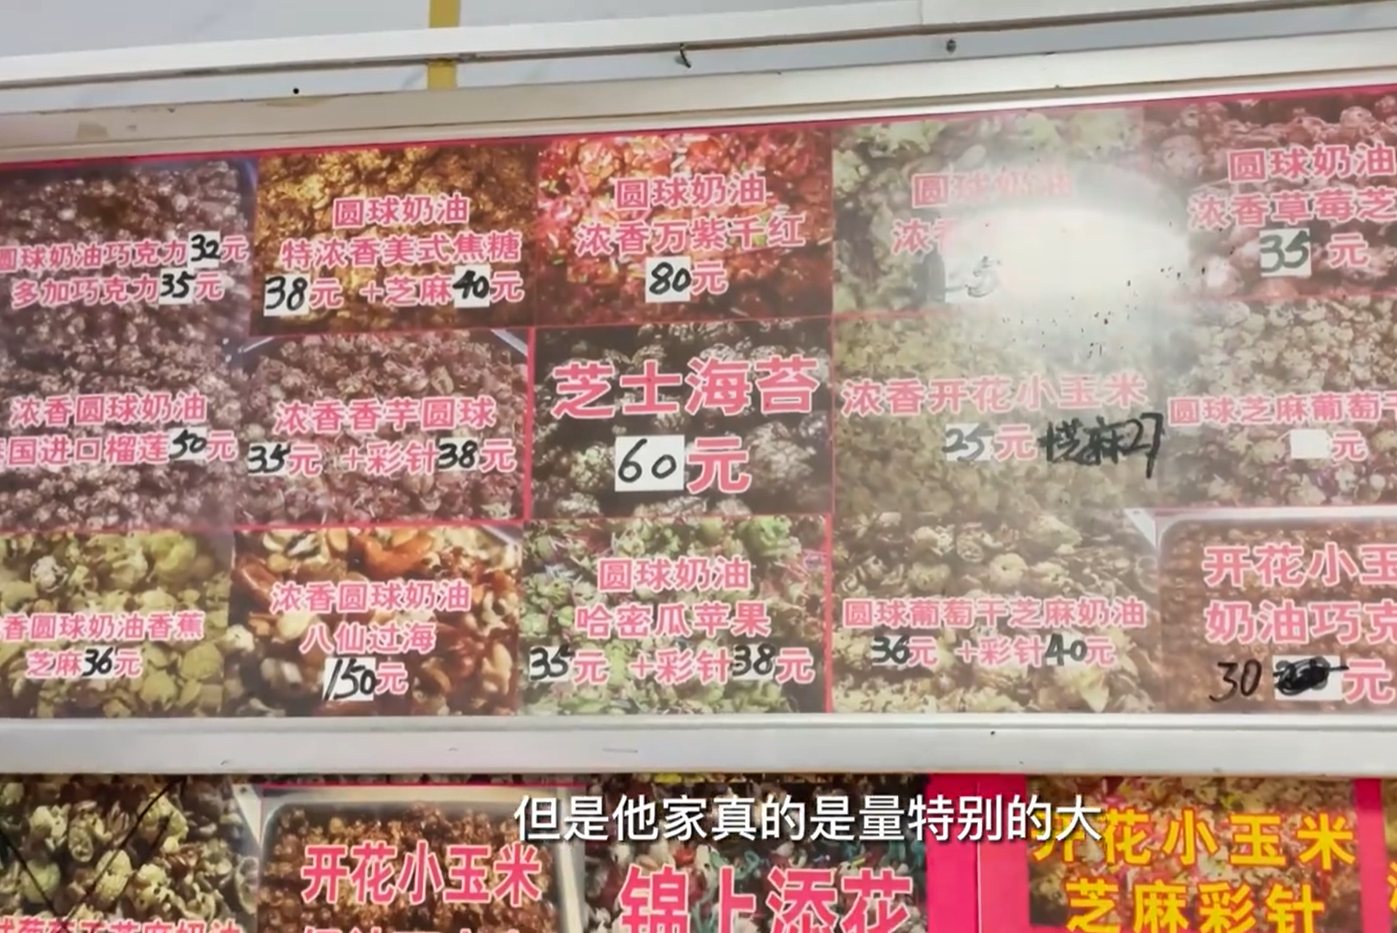 山东老汉卖爆米花,贵的一份卖260元,回应：这价格真挣不了多少钱